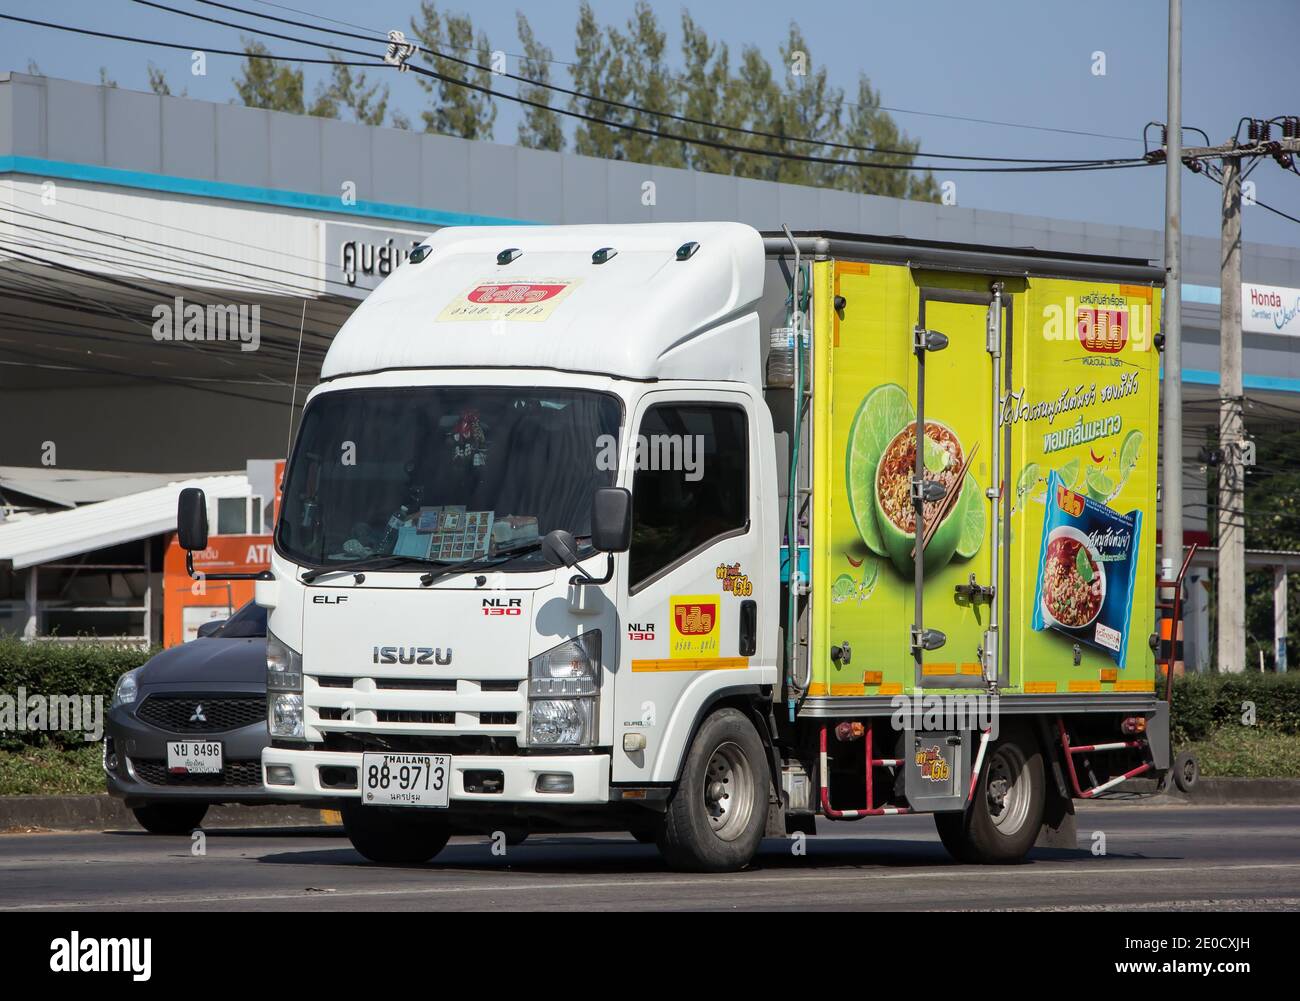 Chiangmai, Thaïlande - novembre 23 2020 : camion-conteneur de Thai Confuerved Food Factory Company Limited. Photo sur la route n°121 à environ 8 km de Downtow Banque D'Images